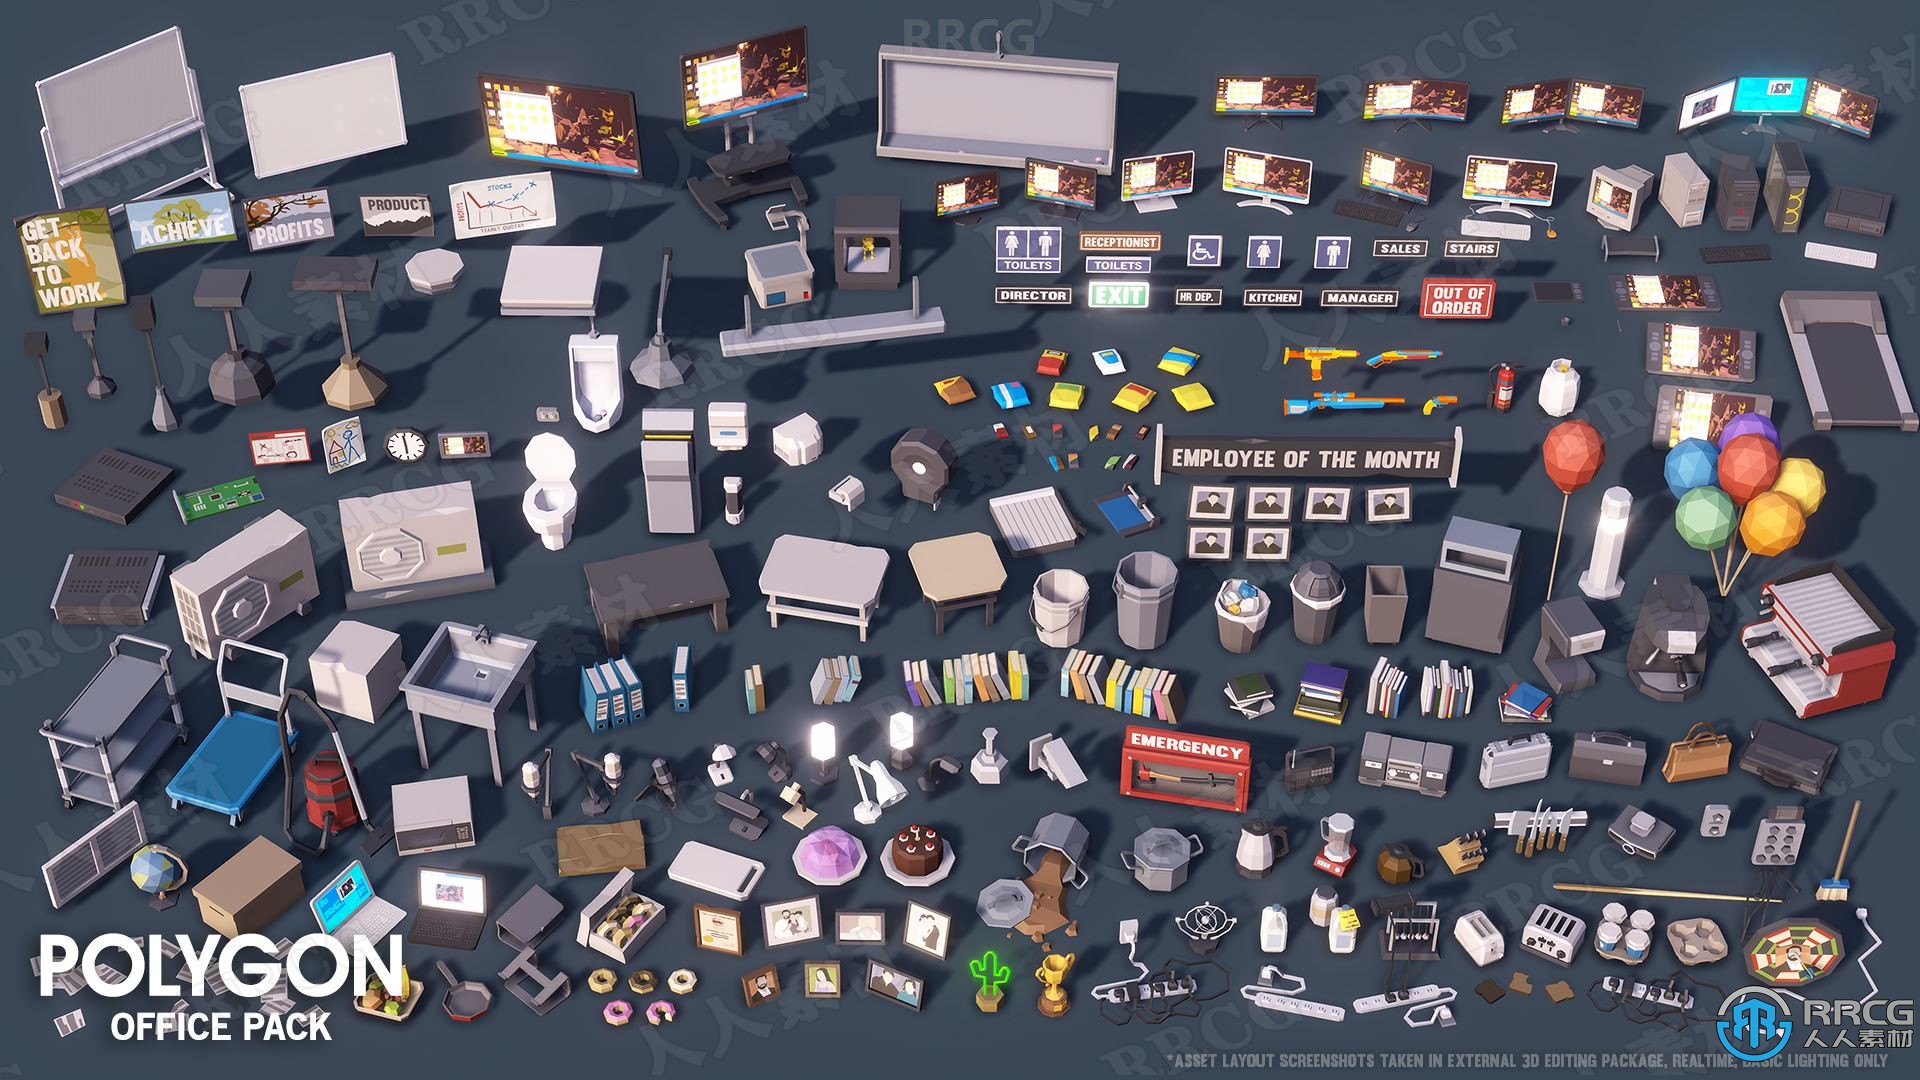 办公室主题模块化建筑室内环境场景Unreal Engine游戏素材资源